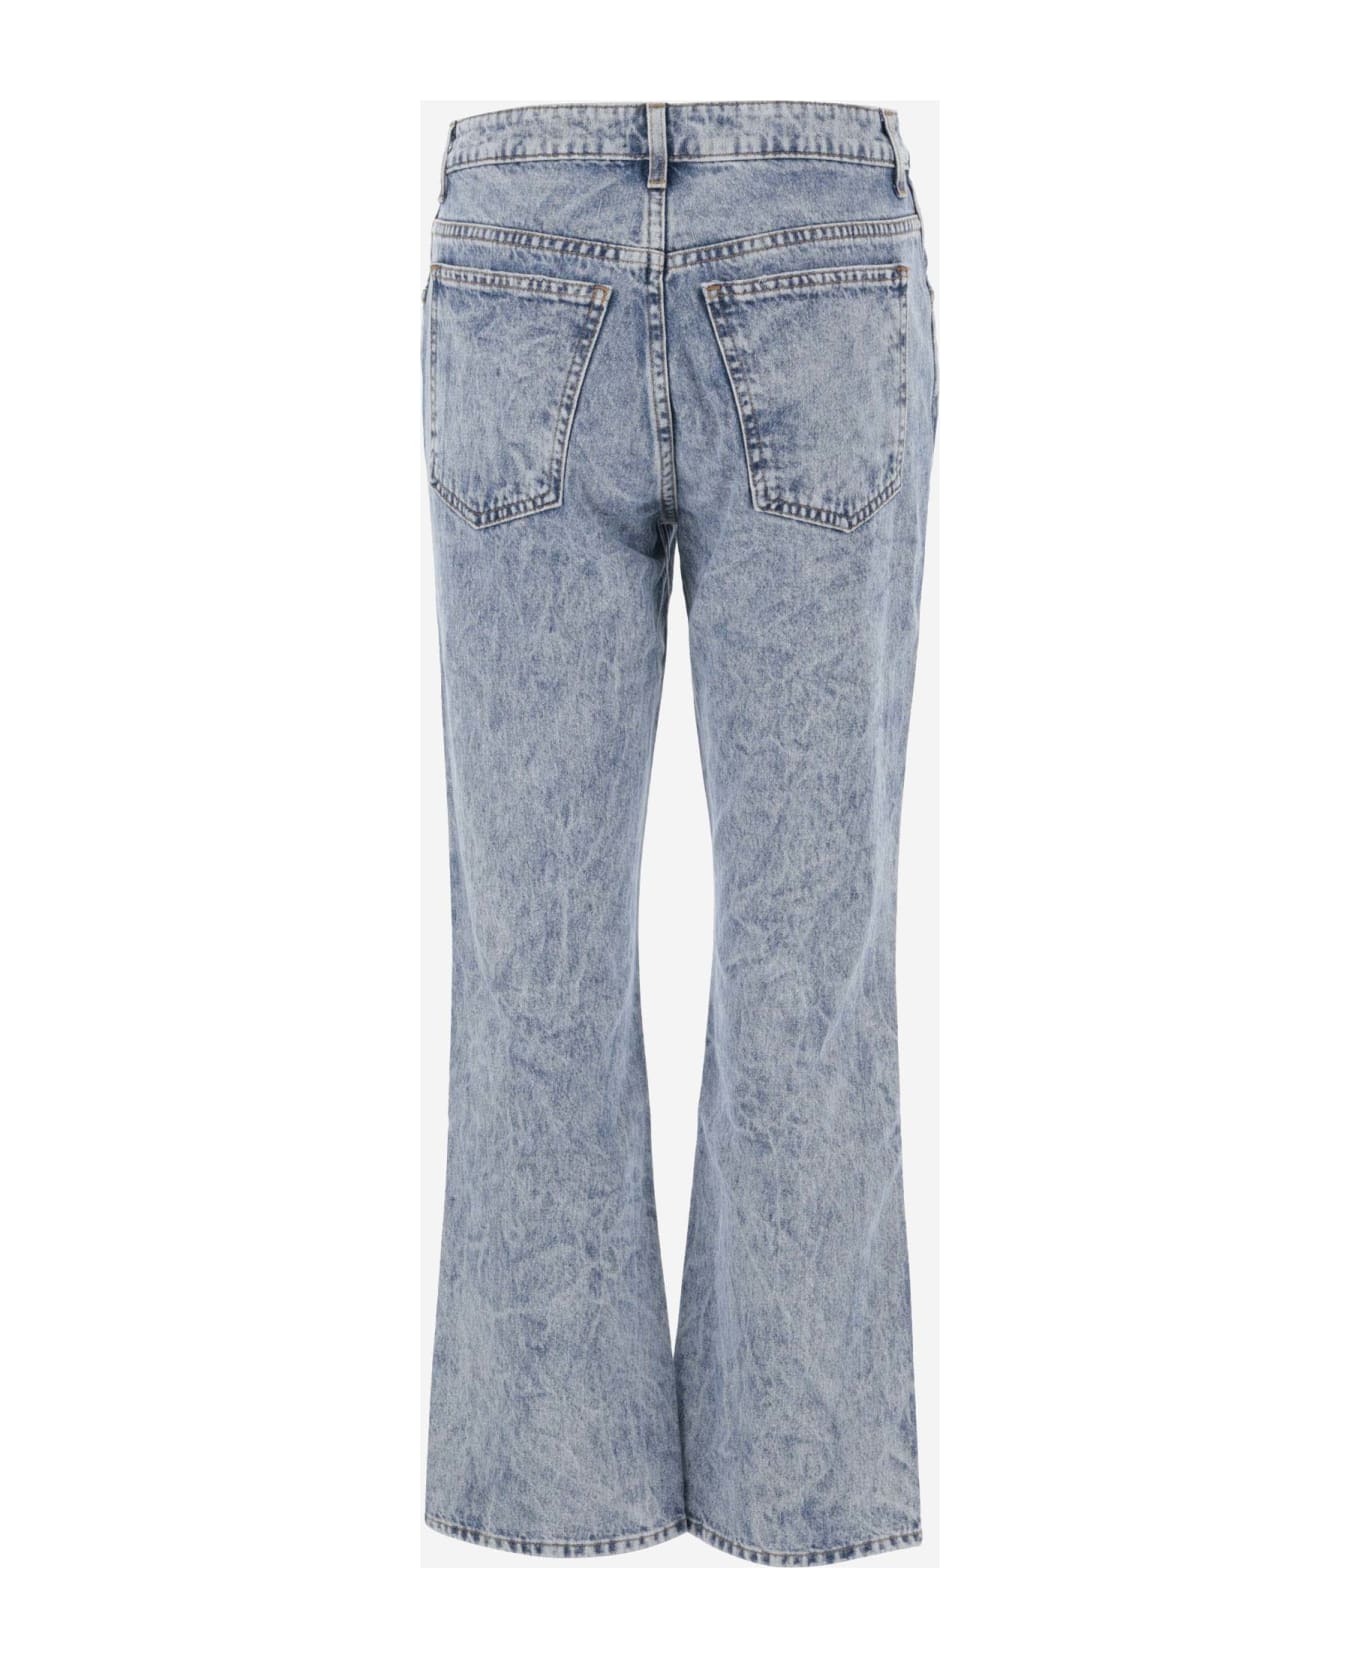 Khaite Cotton Denim Jeans - Bryce